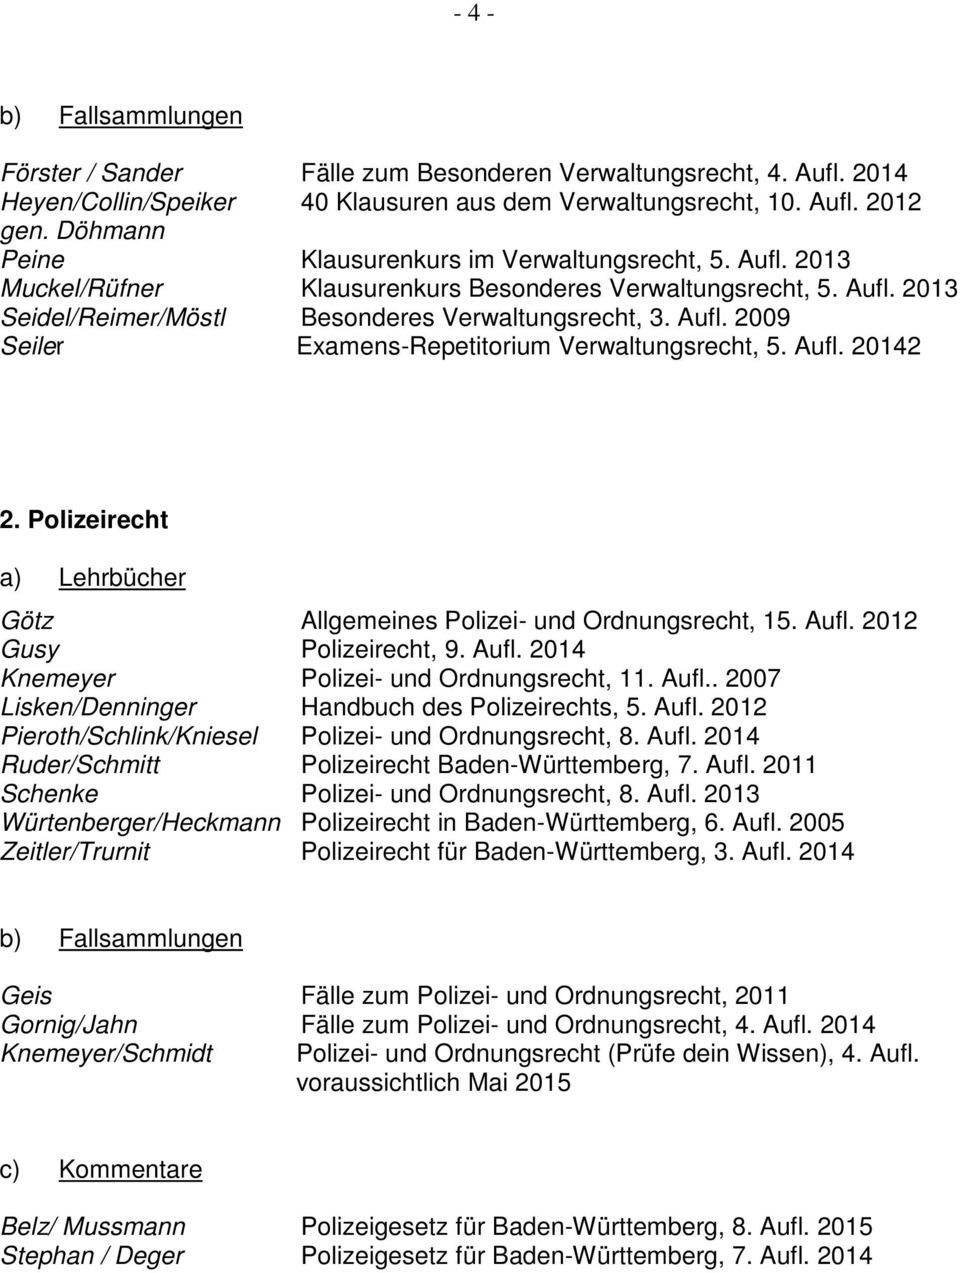 Aufl. 20142 2. Polizeirecht Götz Allgemeines Polizei- und Ordnungsrecht, 15. Aufl. 2012 Gusy Polizeirecht, 9. Aufl. 2014 Knemeyer Polizei- und Ordnungsrecht, 11. Aufl.. 2007 Lisken/Denninger Handbuch des Polizeirechts, 5.